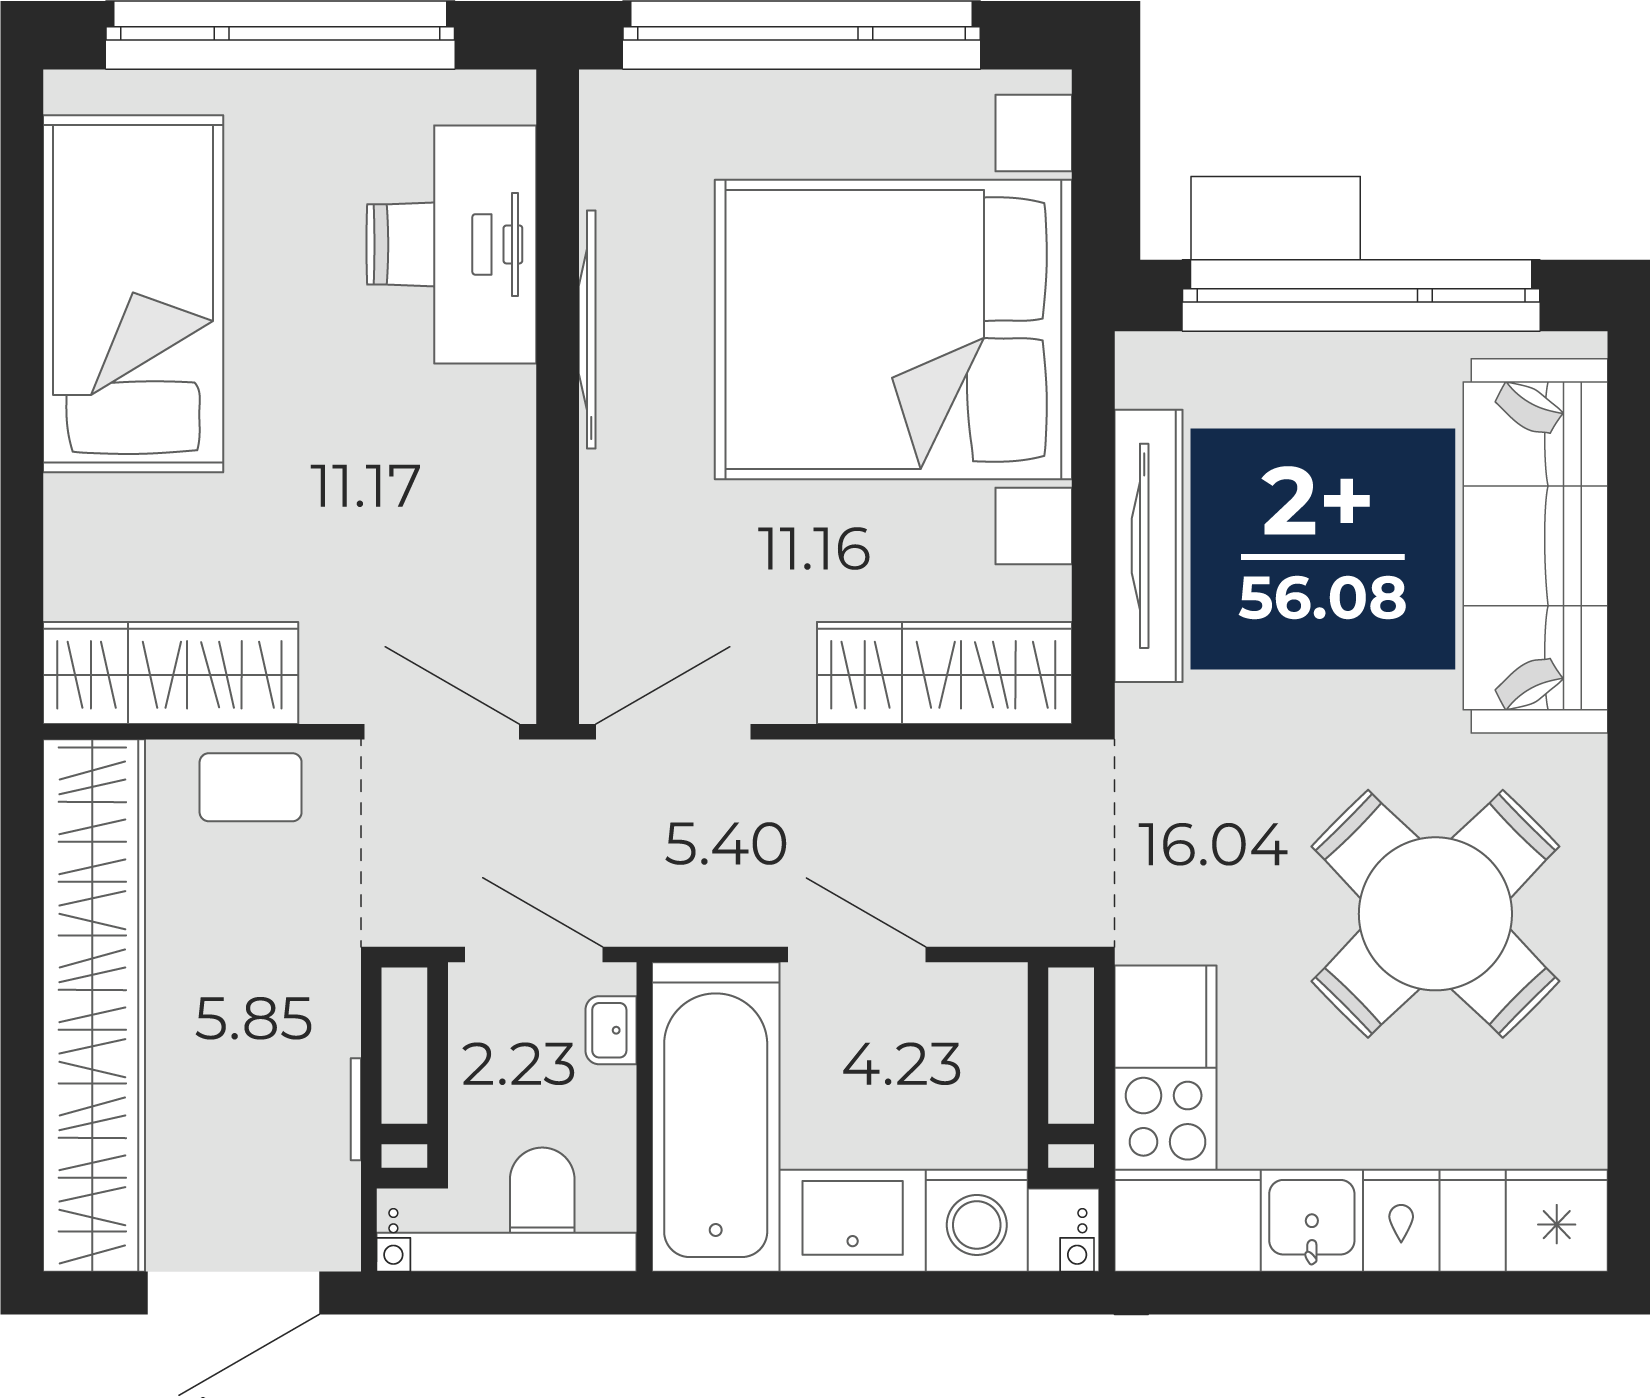 Квартира № 124, 2-комнатная, 56.08 кв. м, 2 этаж